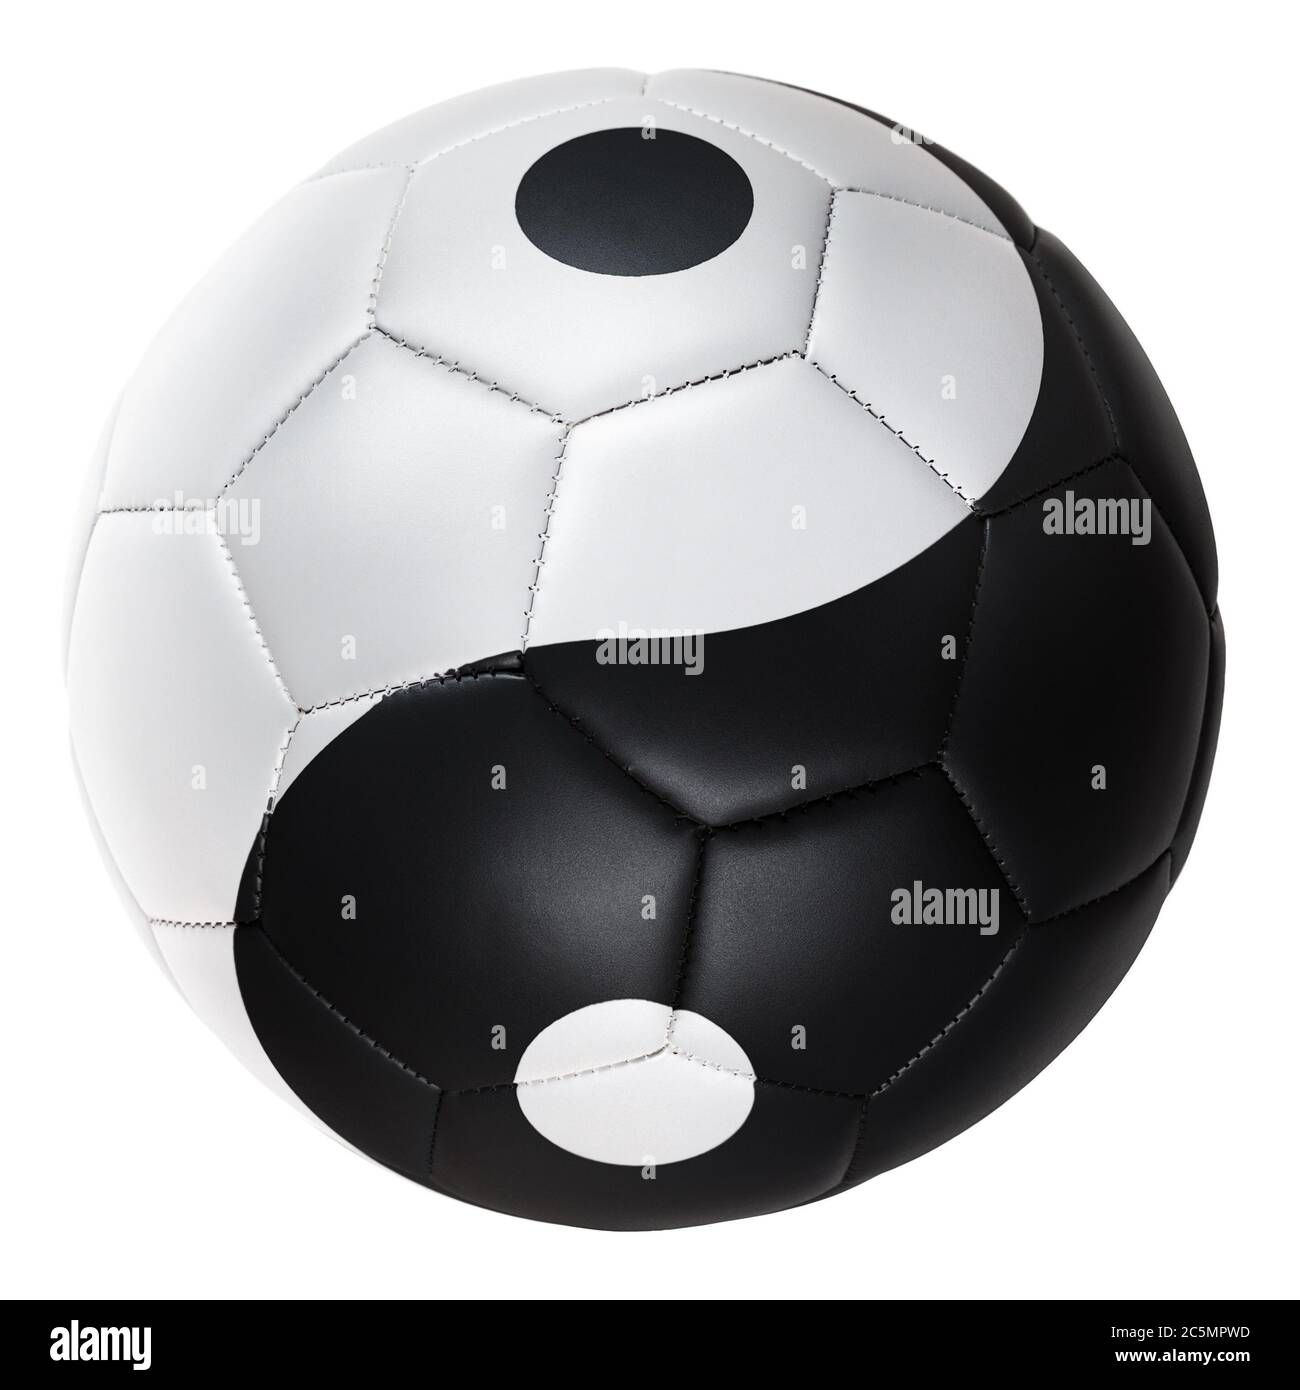 Stillleben Bild von schwarz-weiß Fußball mit dem Yin und Yang Symbol auf dem Fußball Stockfoto